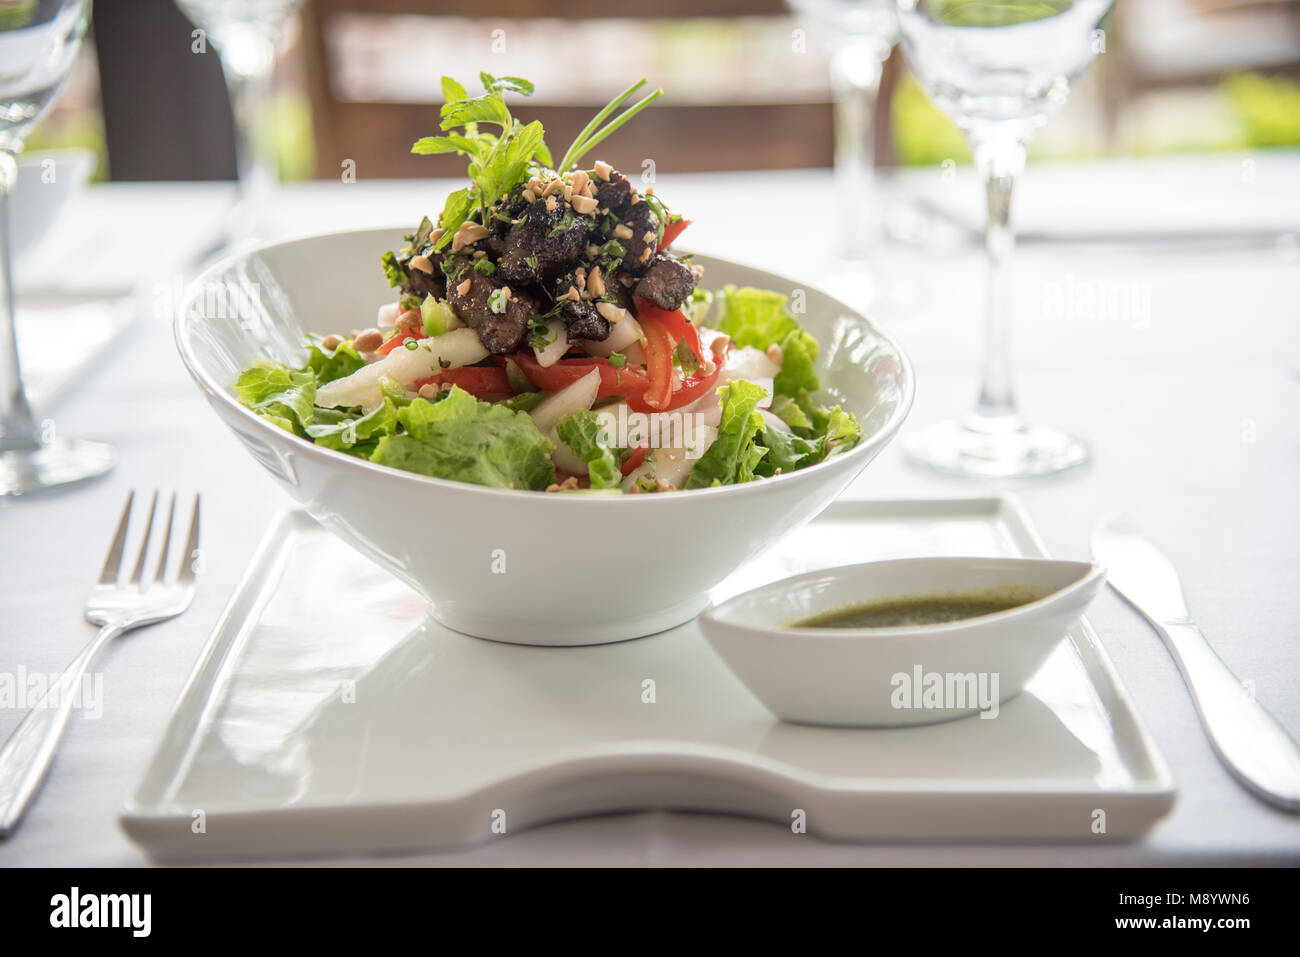 In der Nähe von wunderschönen, grünen Salat in weißem Porzellan Schüssel serviert. Im Restaurant mit weißen Tischdecken und Besteck in Aussicht serviert. Stockfoto